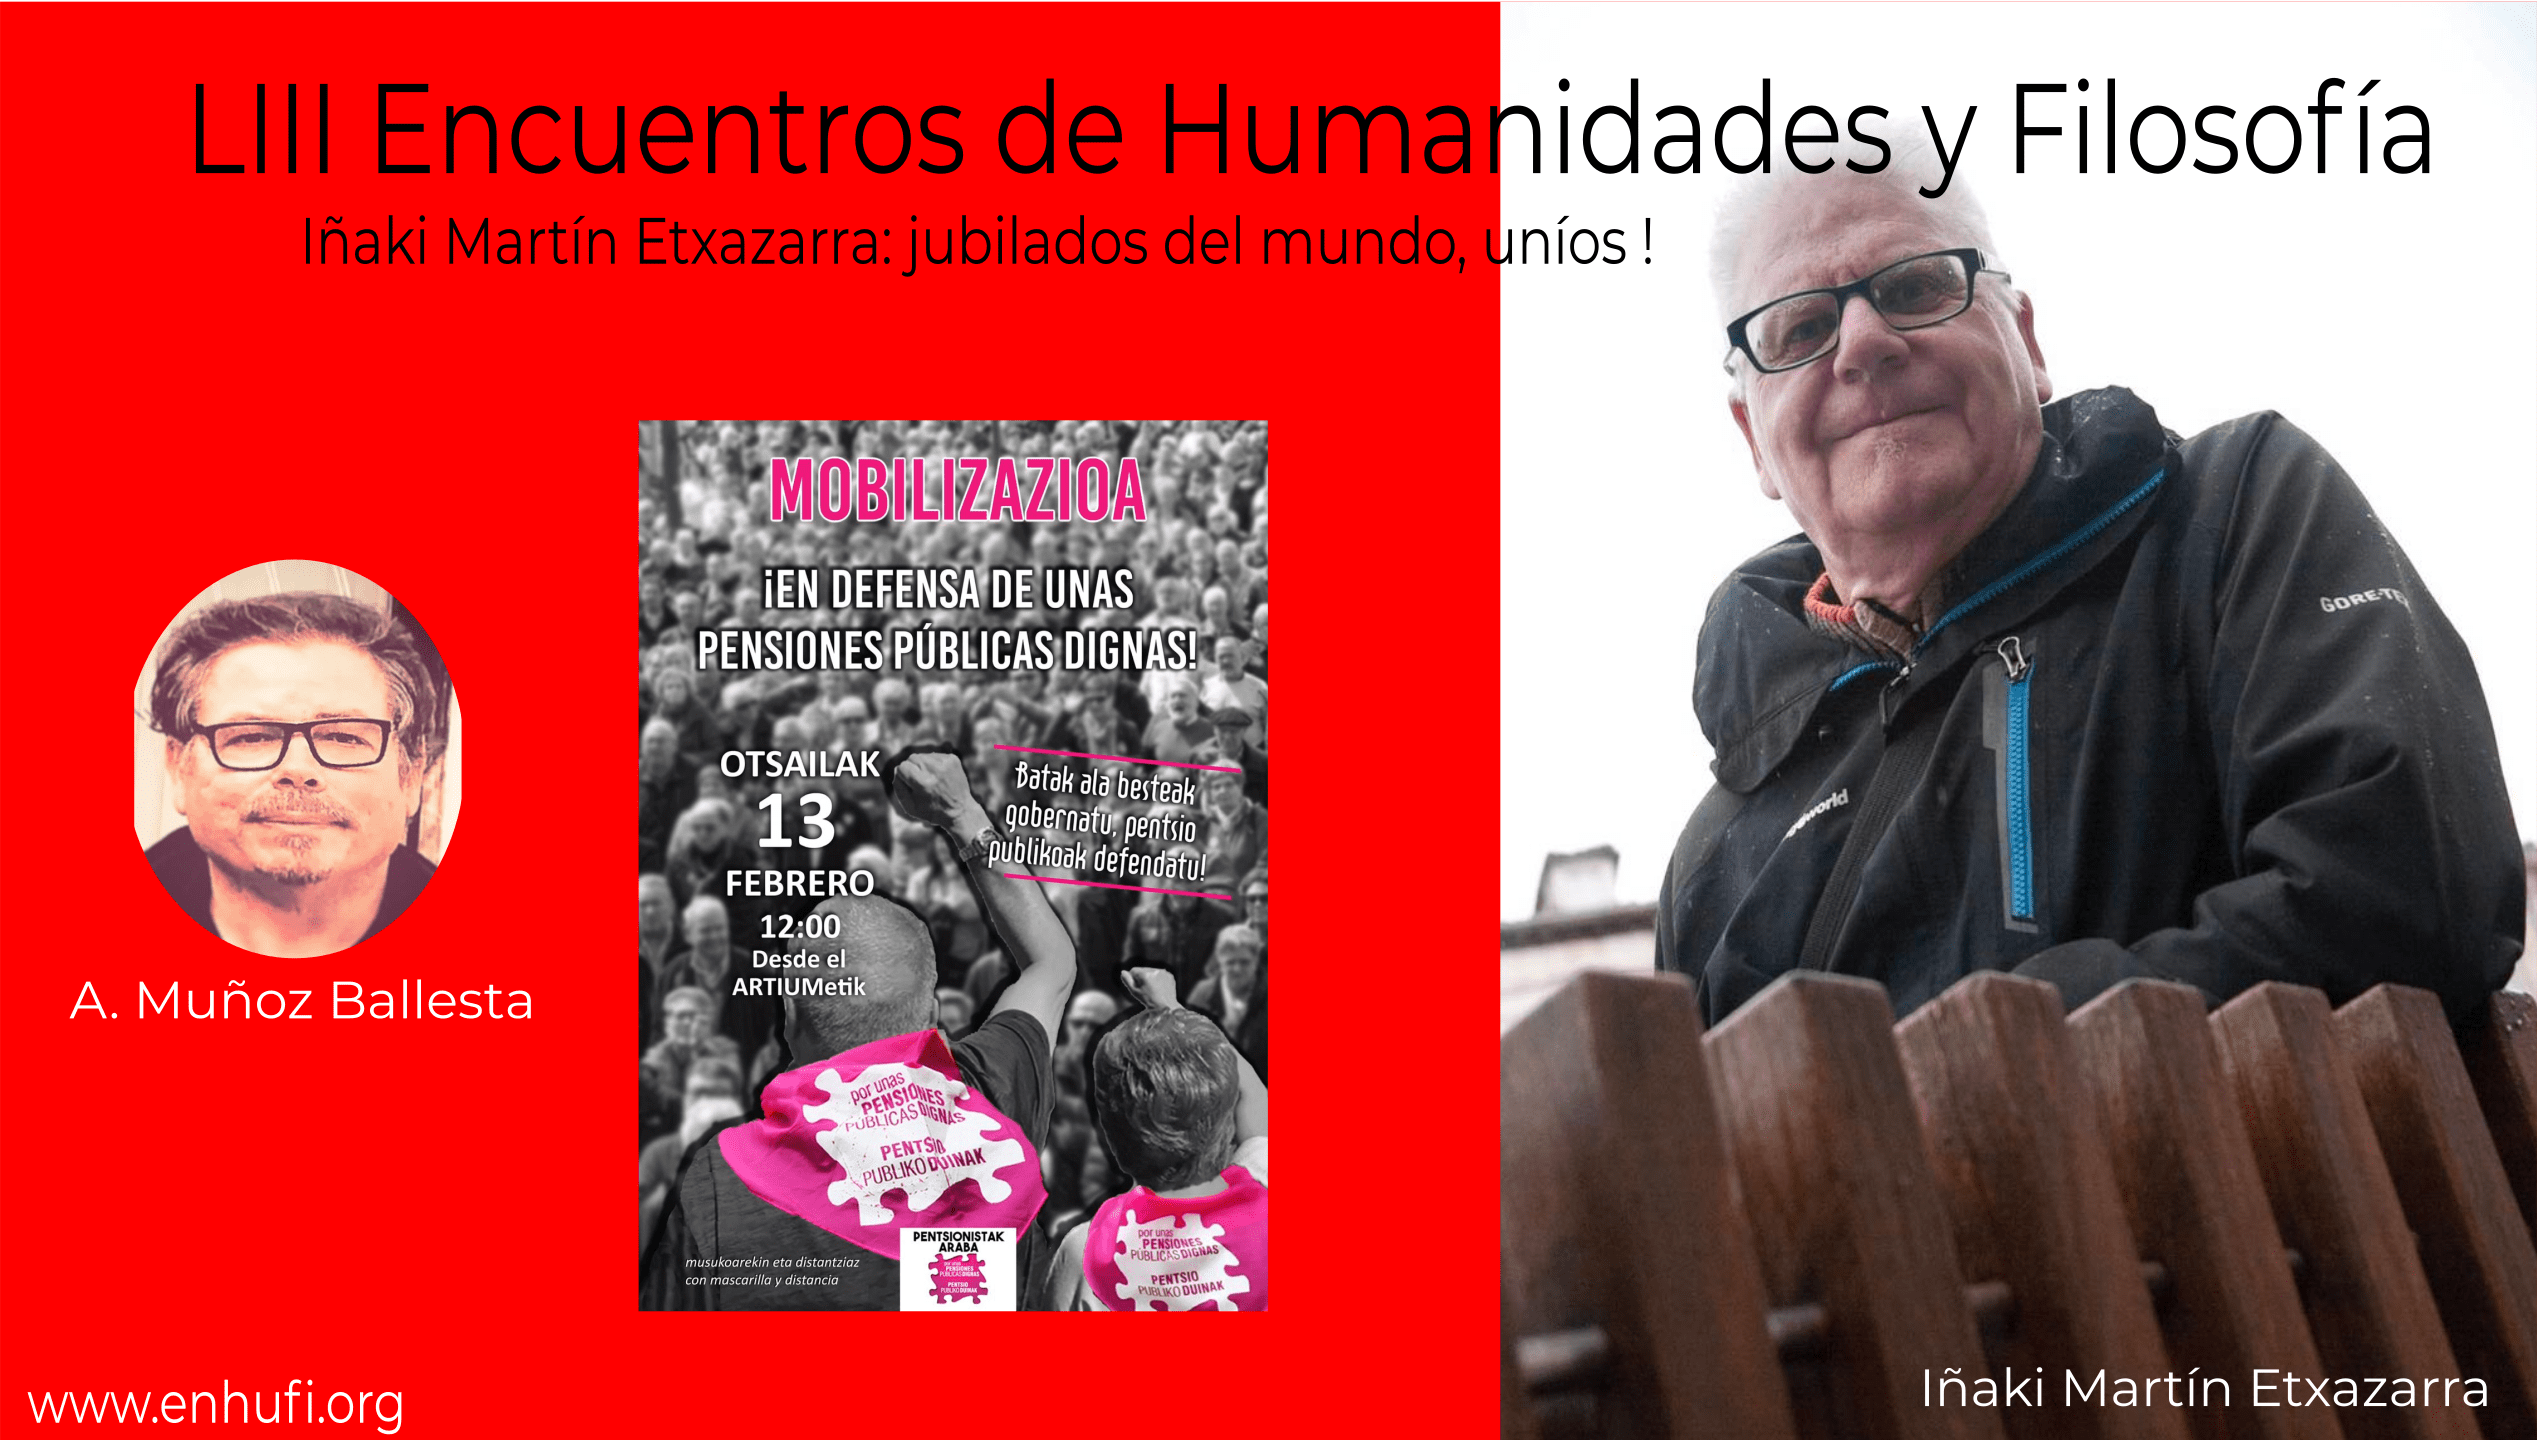 LIII Encuentros de Humanidades y Filosfofía,  Iñaki Martín Etxazarra: jubilados del mundo, uníos!